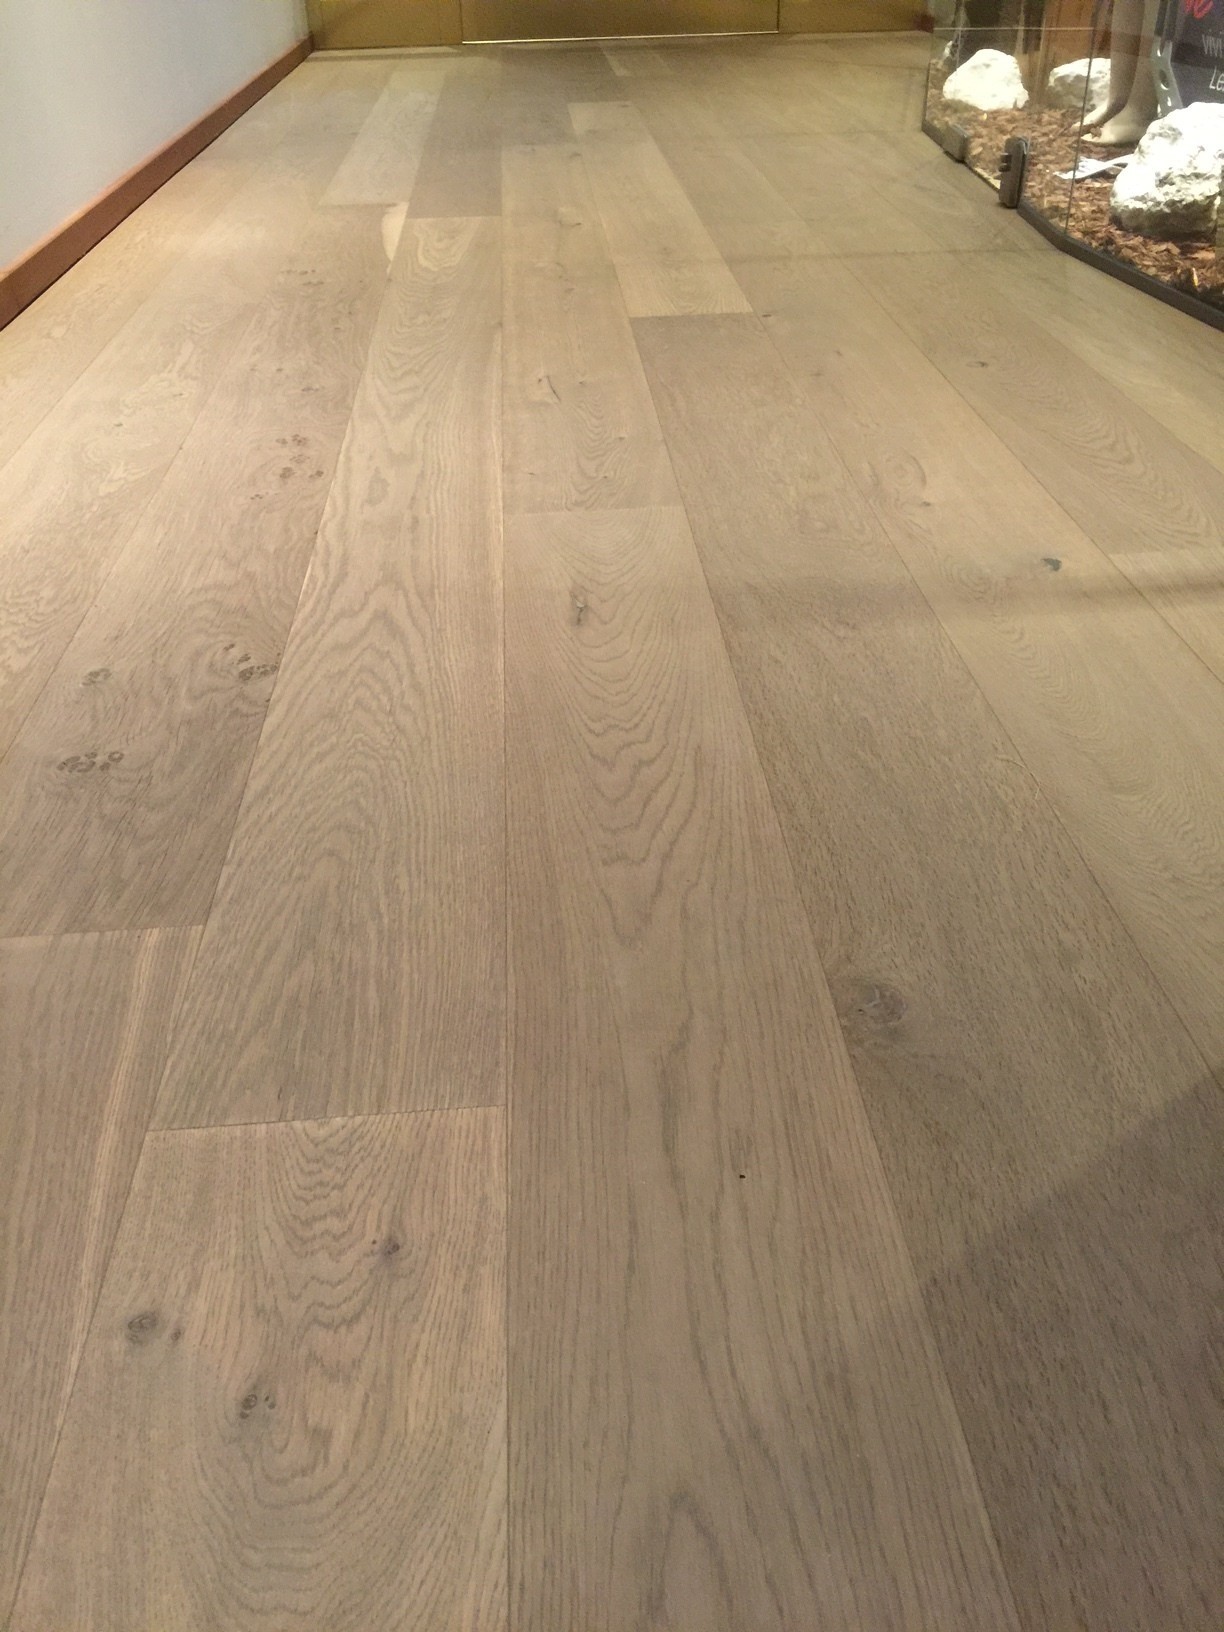 Miele oak plank wooden floor
